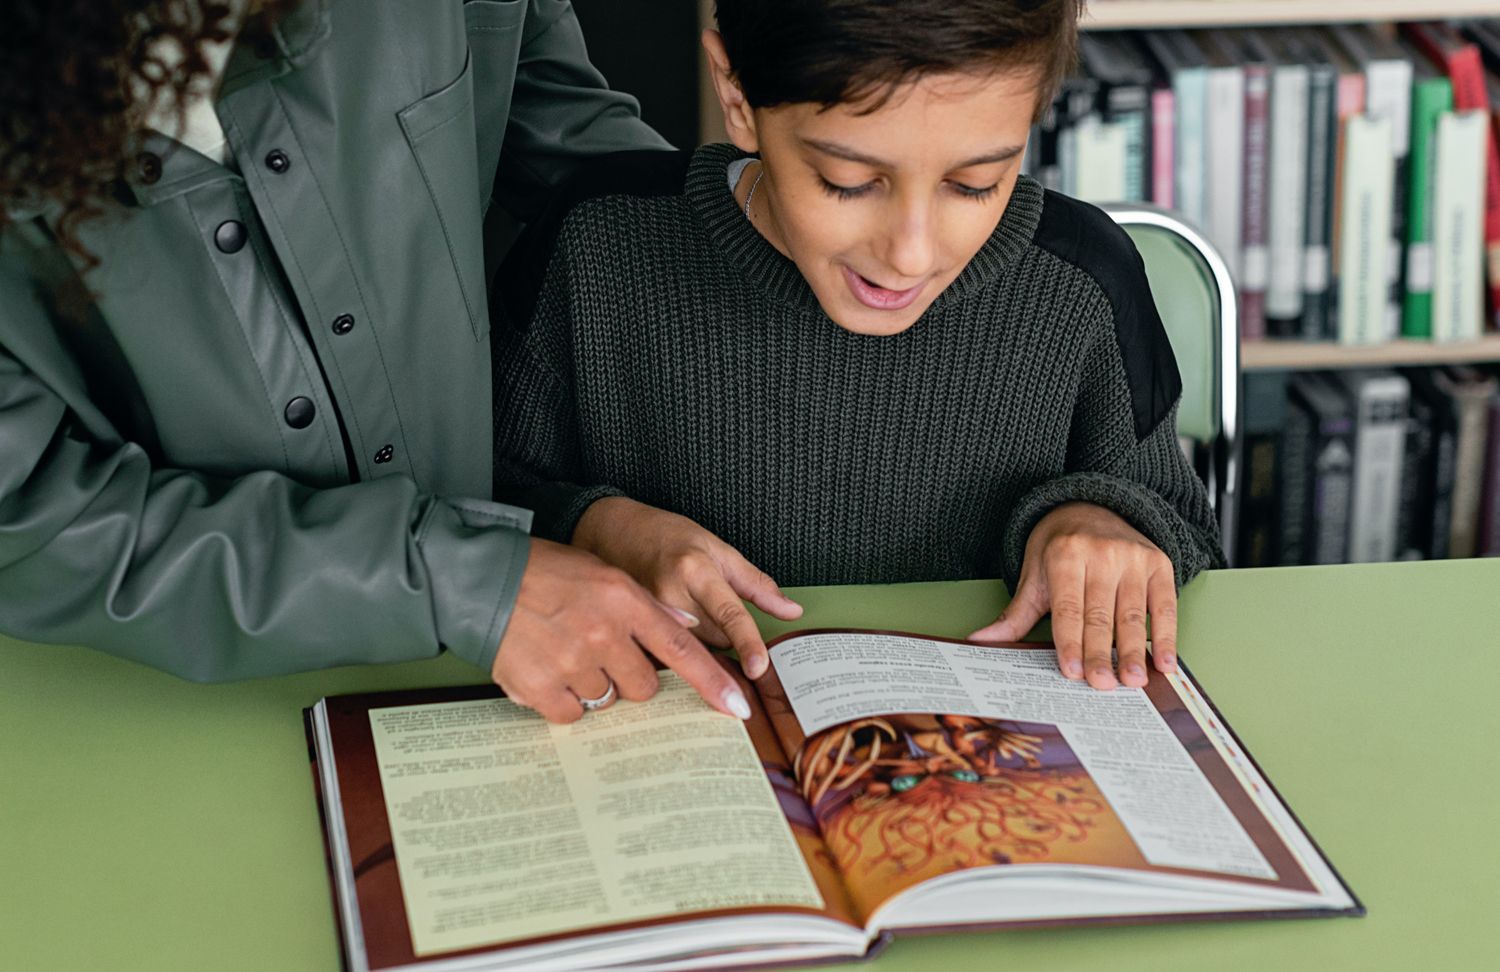 Erwachsener und Kind lesen zusammen in einem Buch